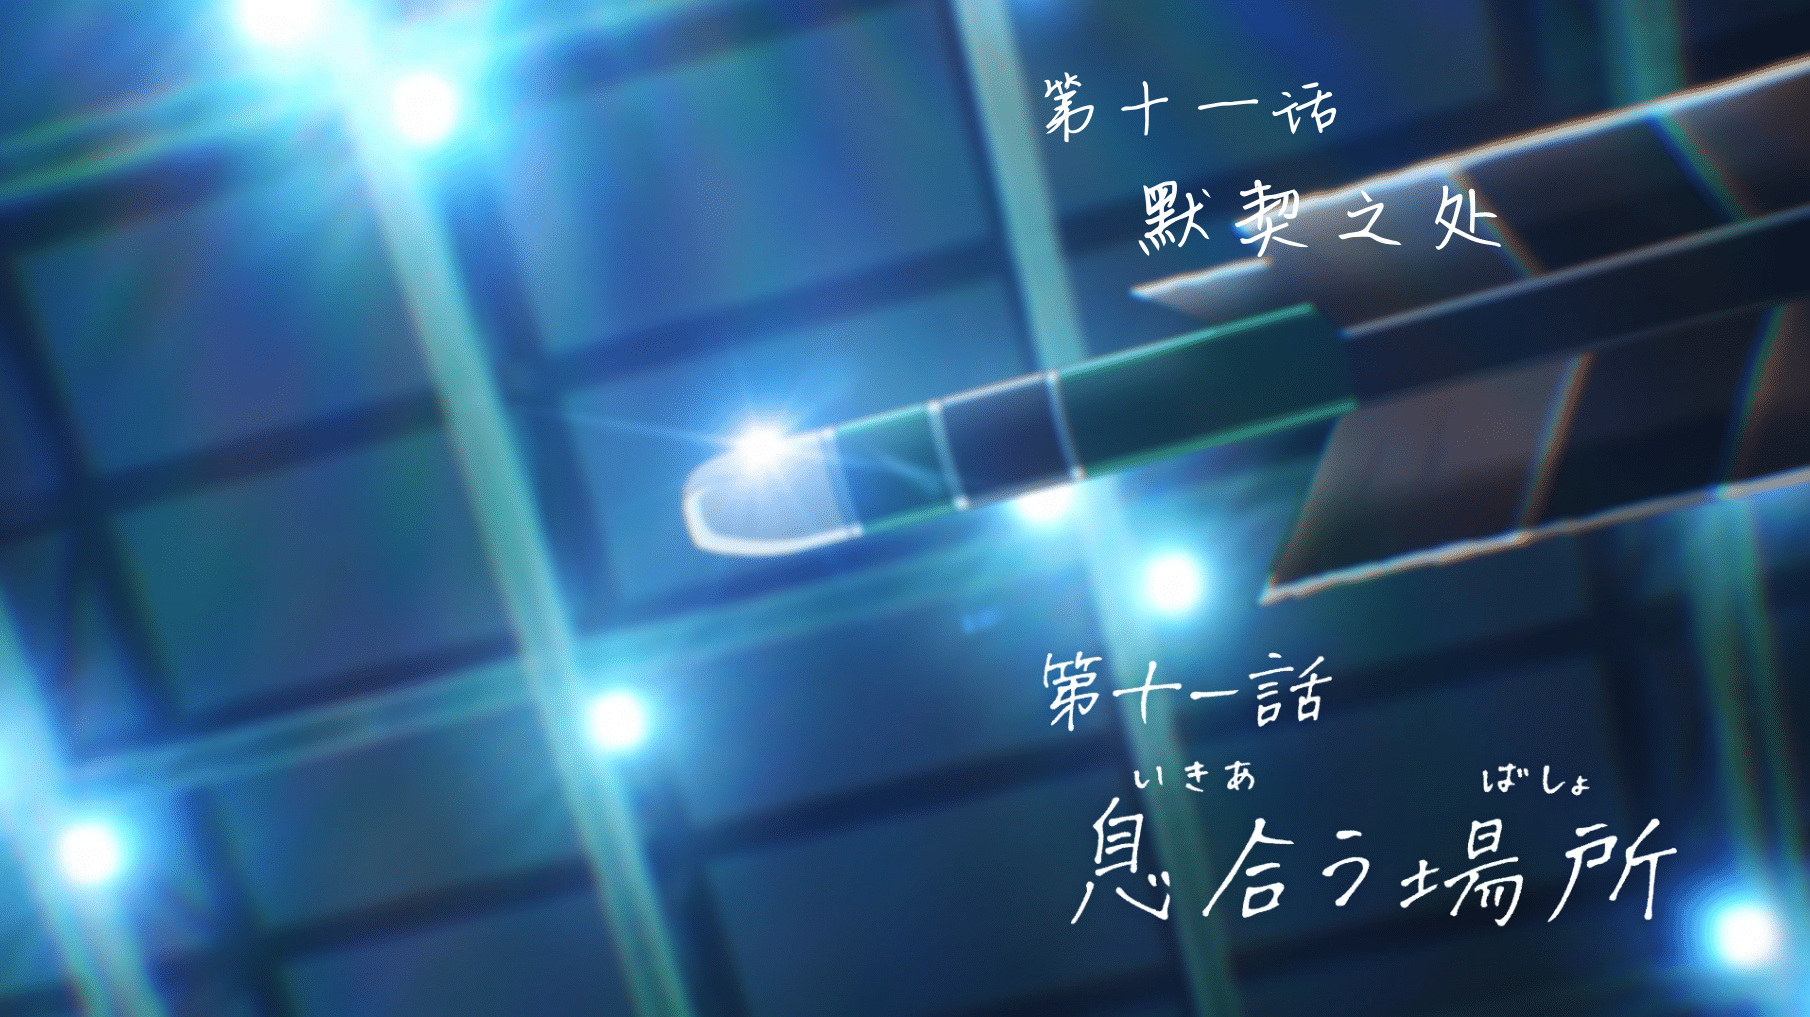 [猎户不鸽压制] 弦音 -联系的一箭- Tsurune：Tsunagari no Issha [11] [1080p] [简中内嵌] [2023年1月番]插图icecomic动漫-云之彼端,约定的地方(´･ᴗ･`)2